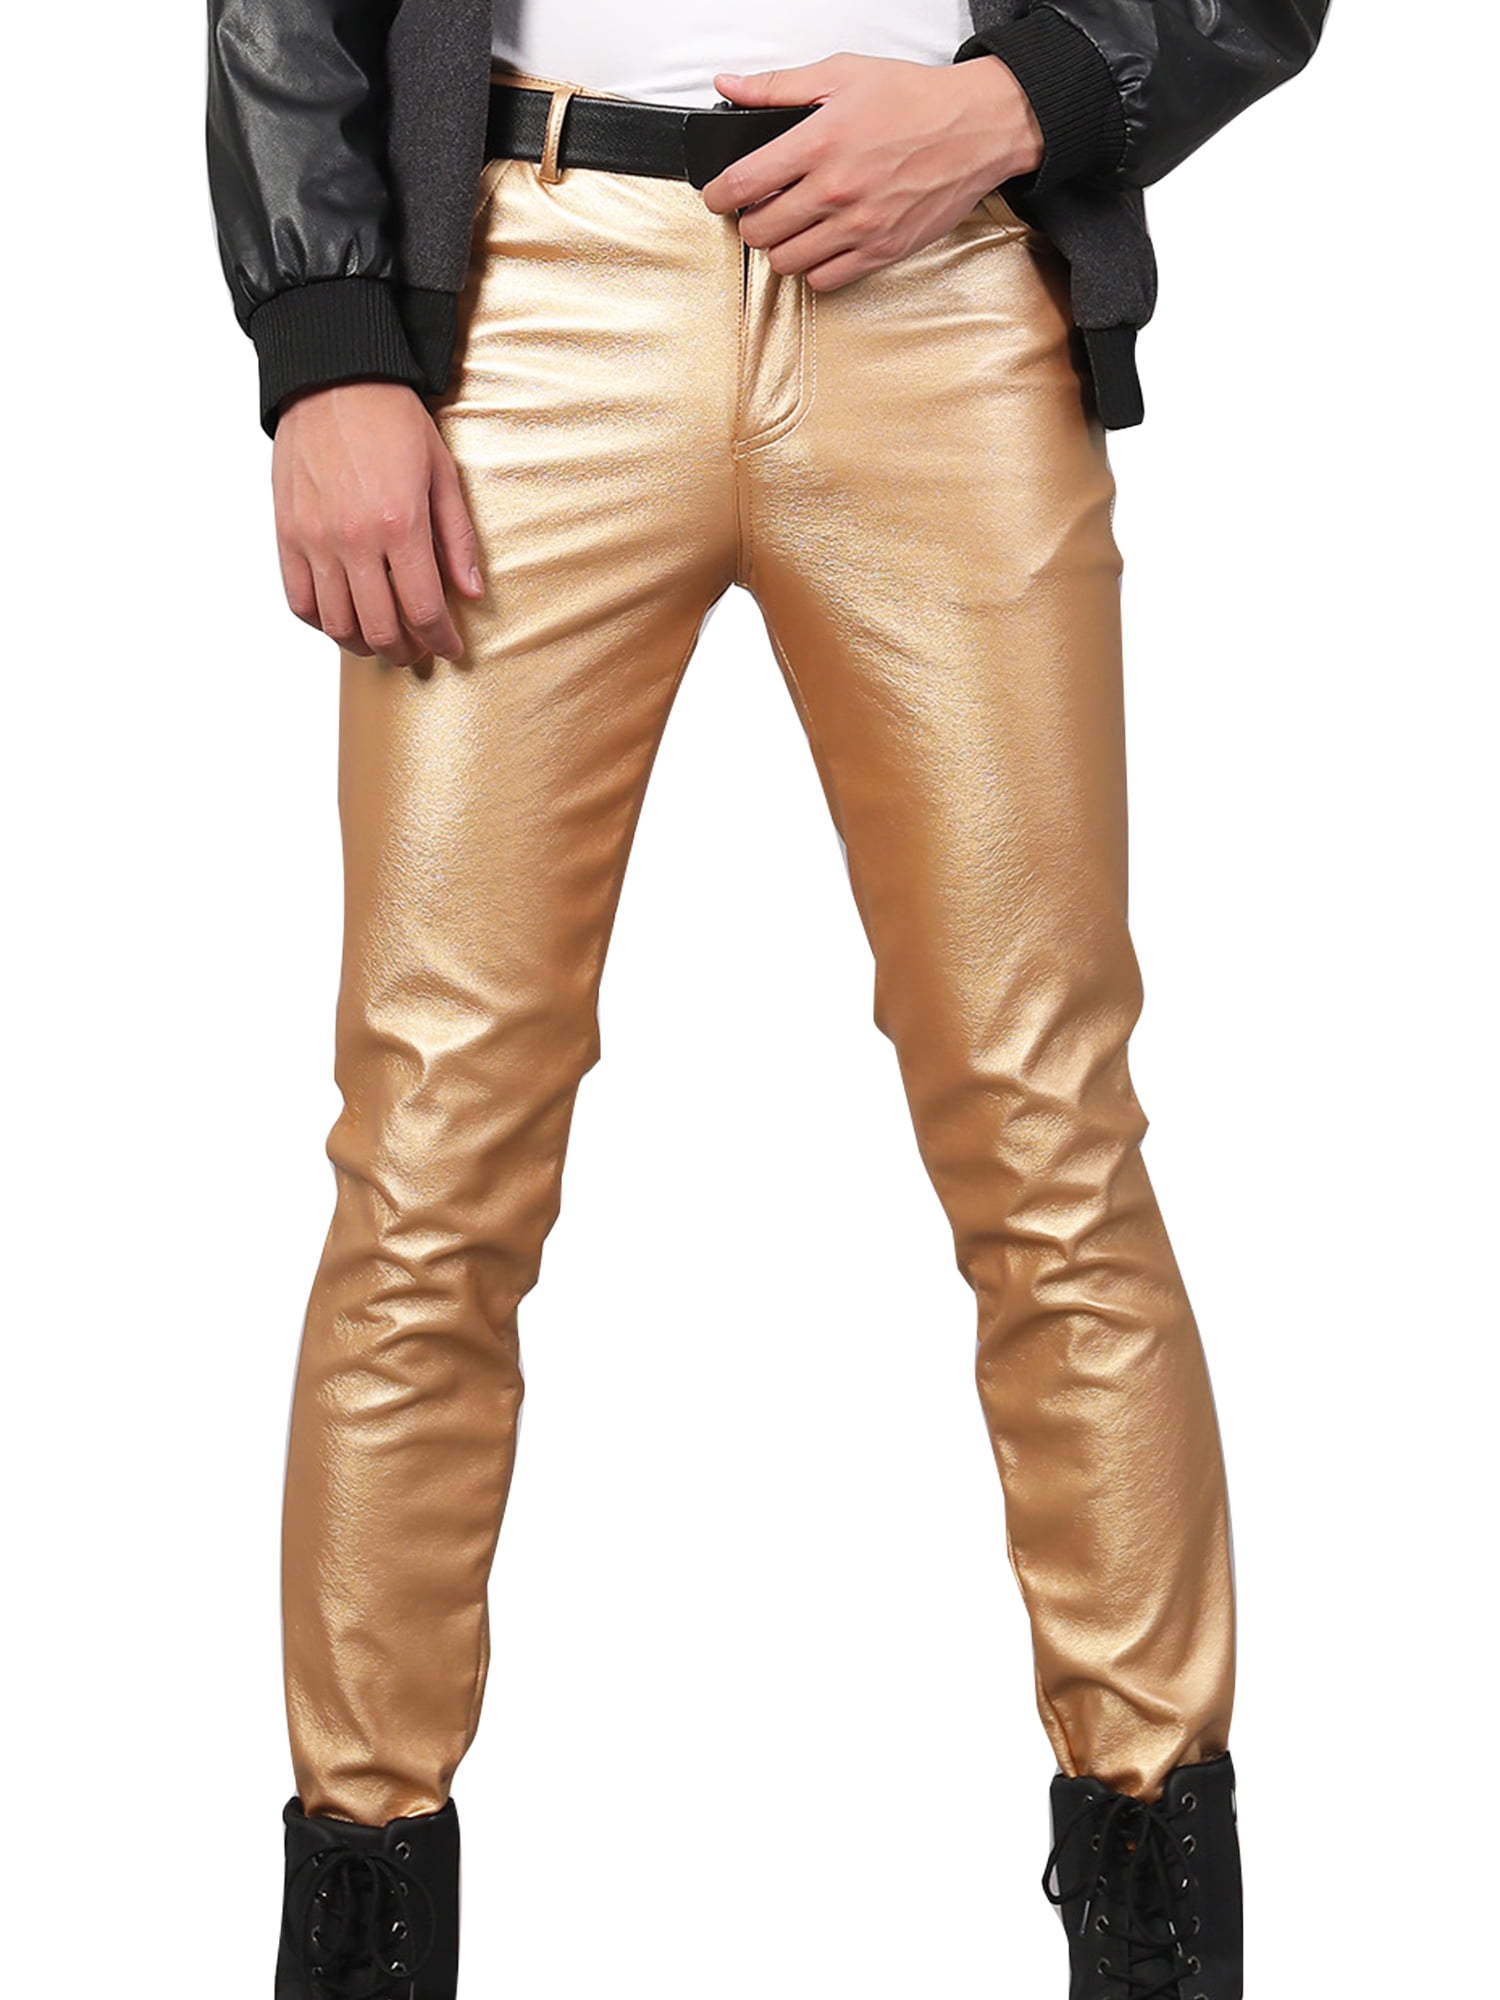 Grianlook Mens Lightweight Solid Color Biker Zip Pocket Bottoms Work Trousers Gold 28 - Walmart.com